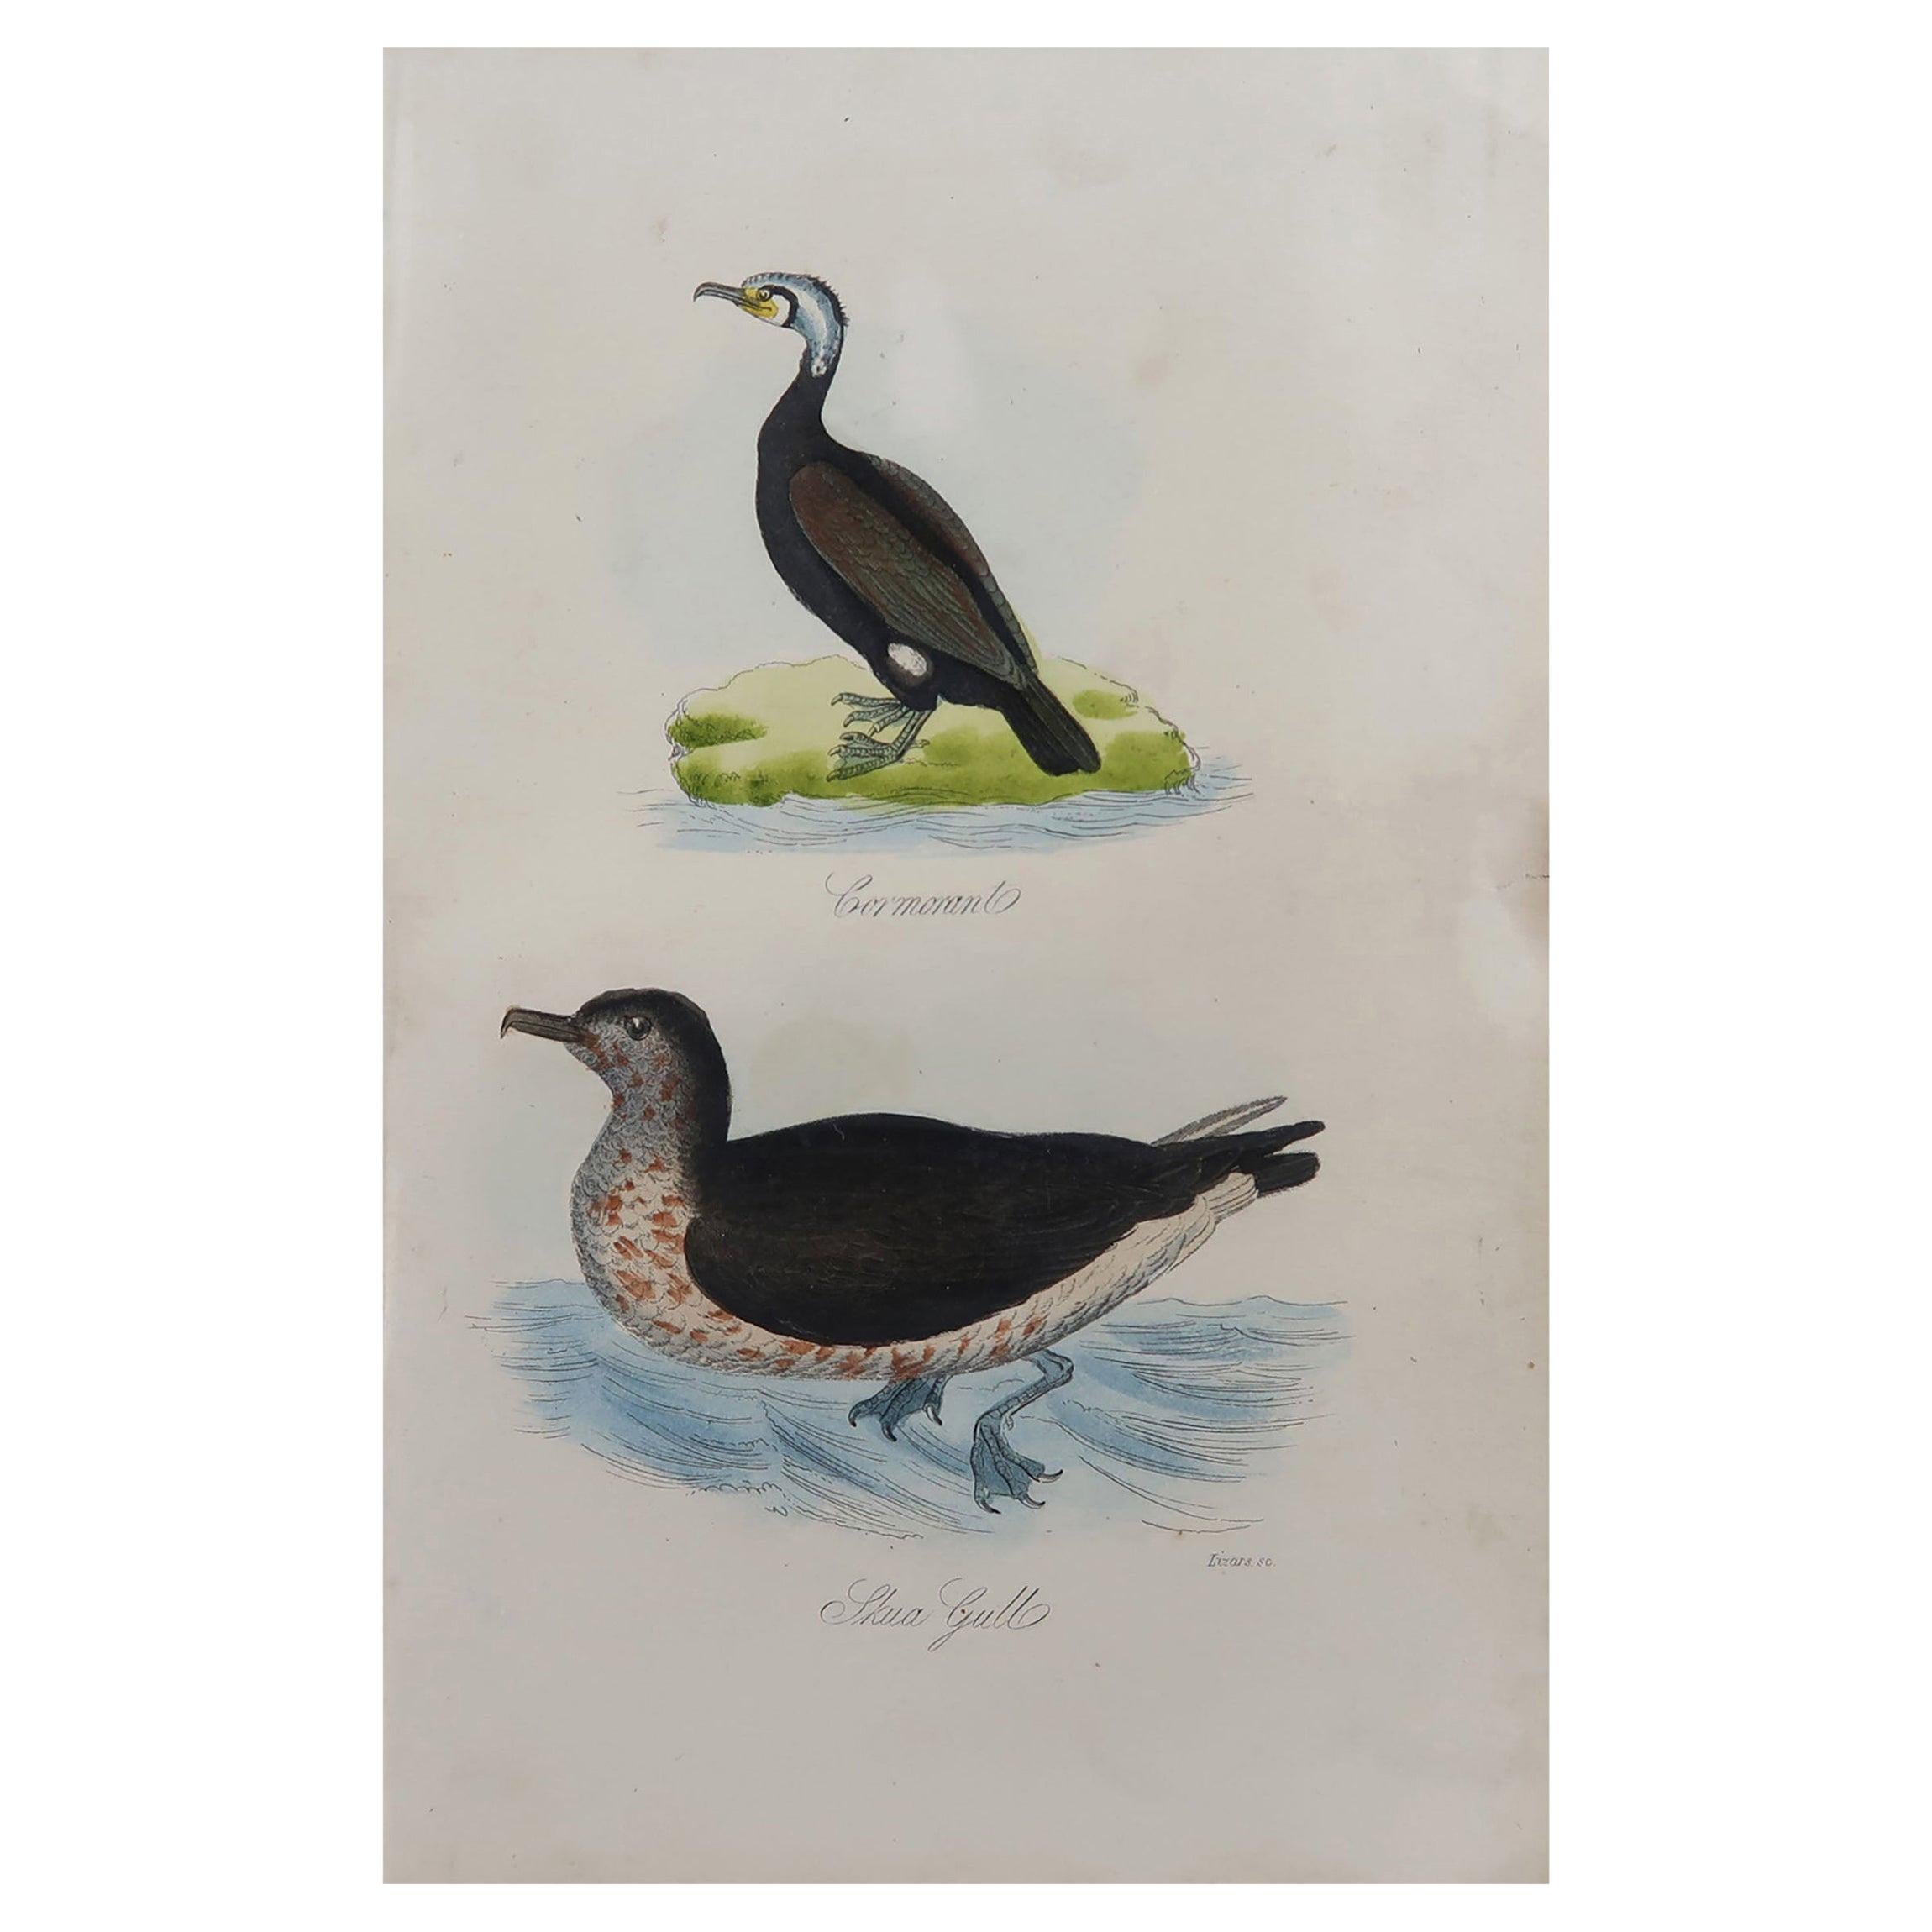 Original Antique Bird Print, Cormorant and a Skua Gull, circa 1850